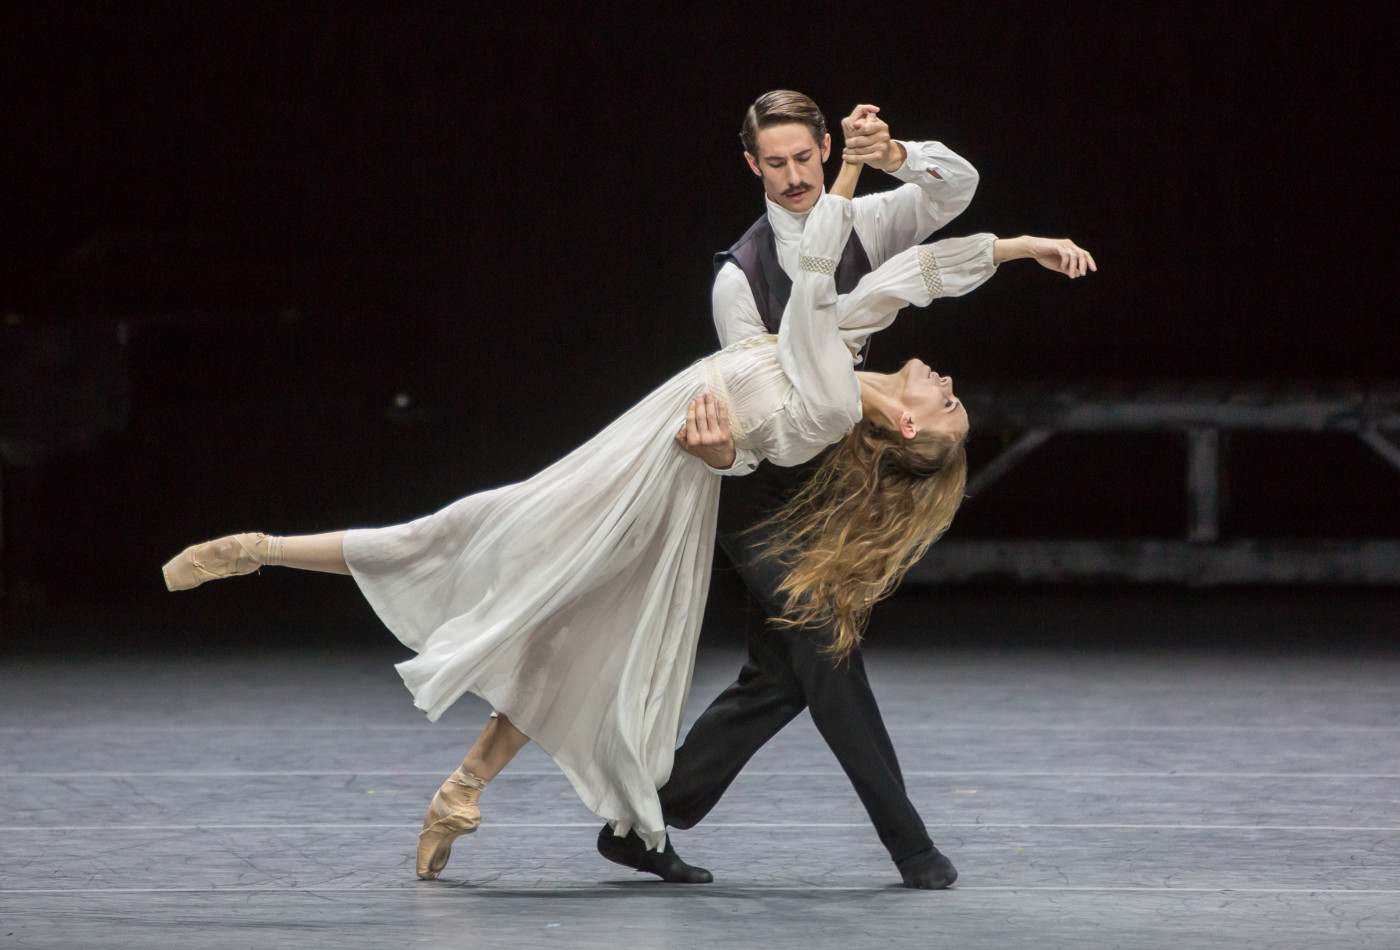 Tanzendes Ballett-Paar des Ballett Zürich in der Vorstellung Anna Karenina auf der Bühne